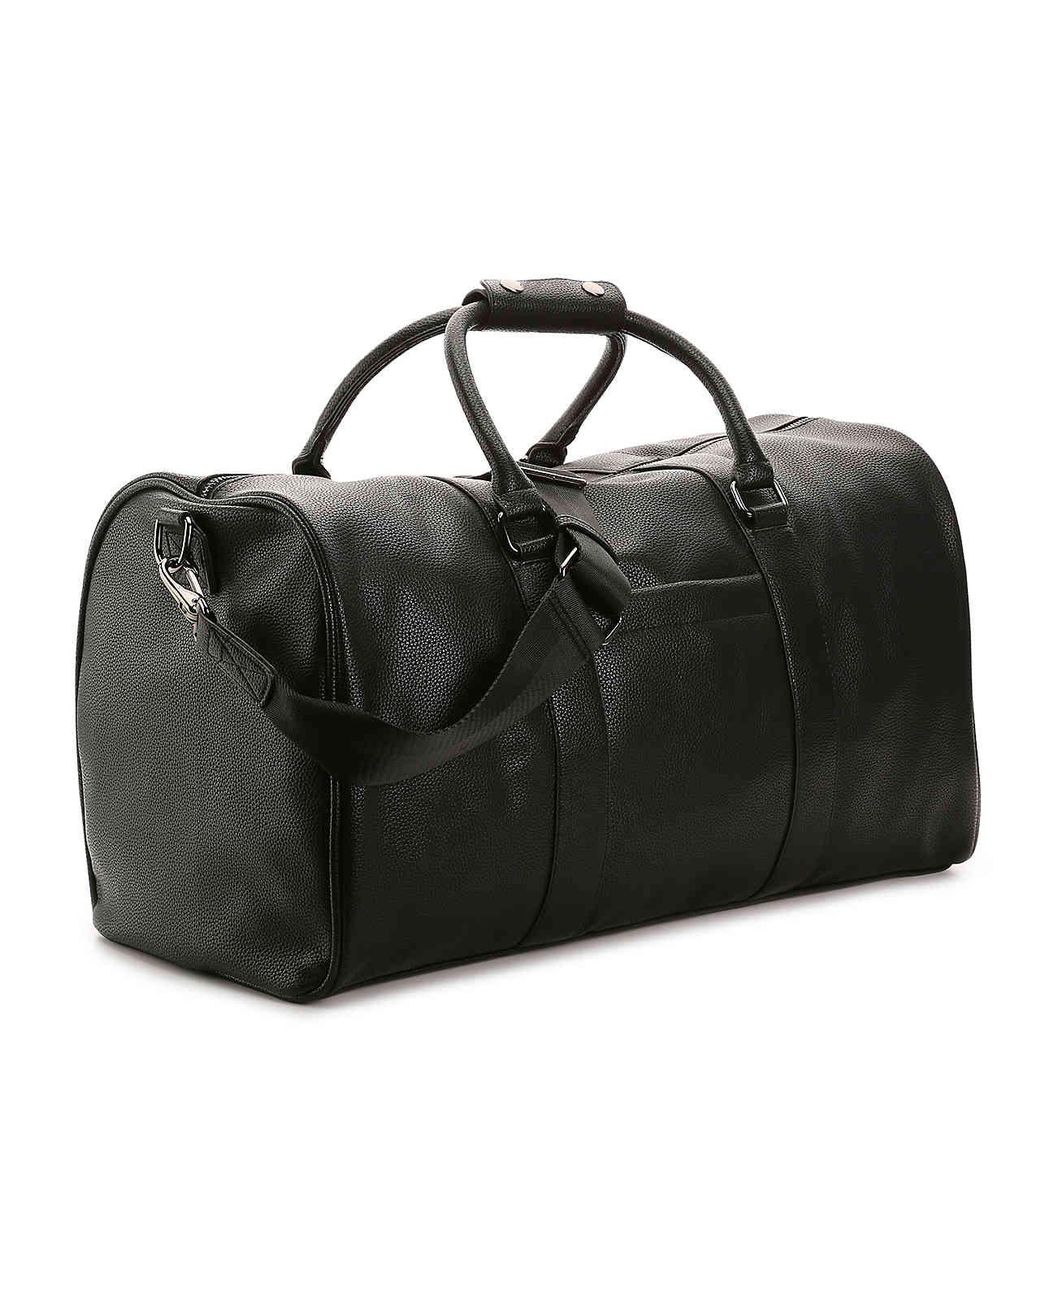 NEW Steve Madden Speedy Weekender Duffle Bag - Black/White WT100300/ Carry  On